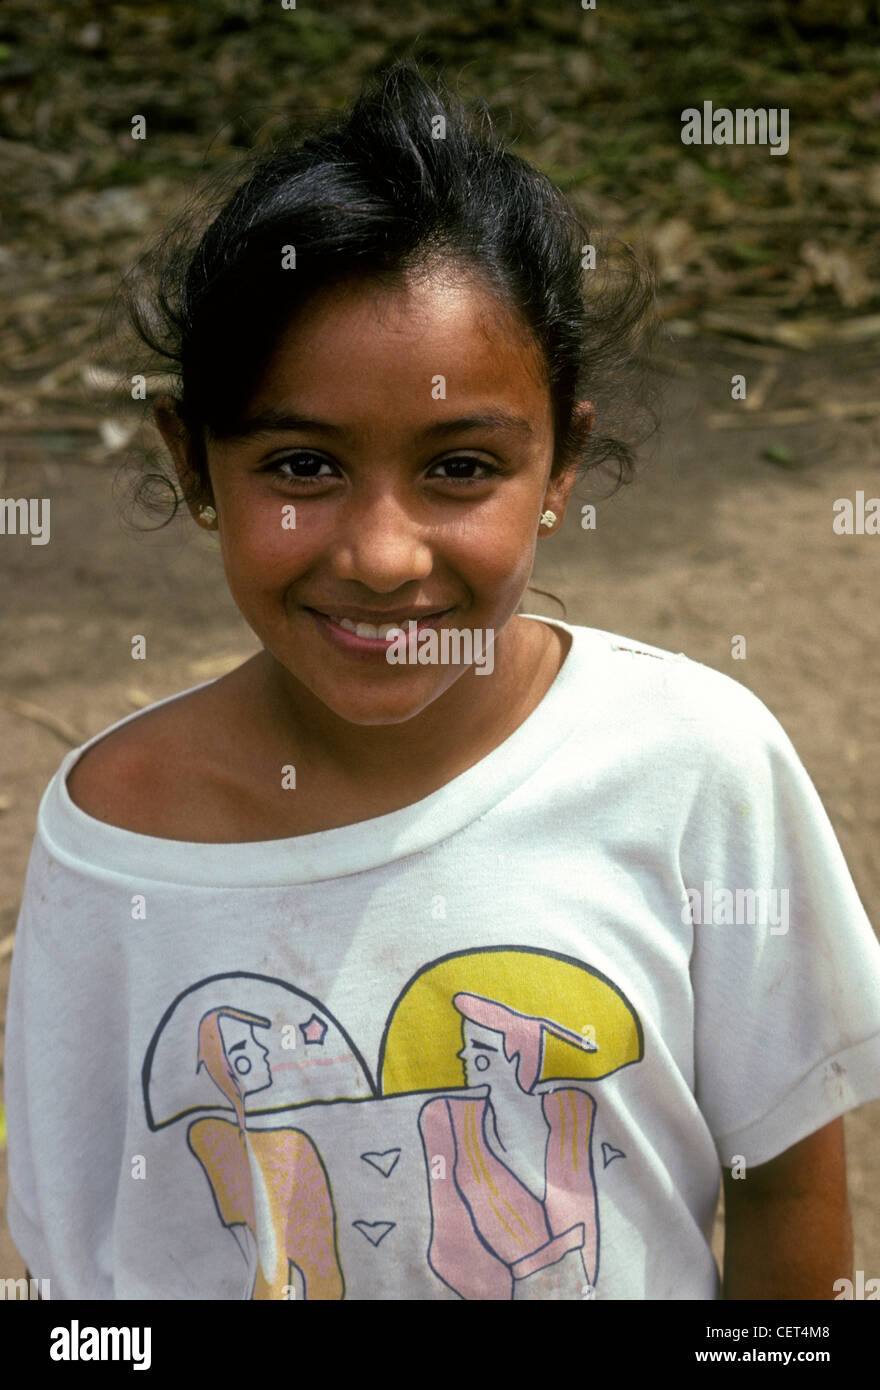 1 una ragazza messicano guardando la telecamera, femmina bambino, contatto visivo, vista frontale, ritratto, villaggio di Ixtapa, Ixtapa, Stato di Jalisco, Messico Foto Stock